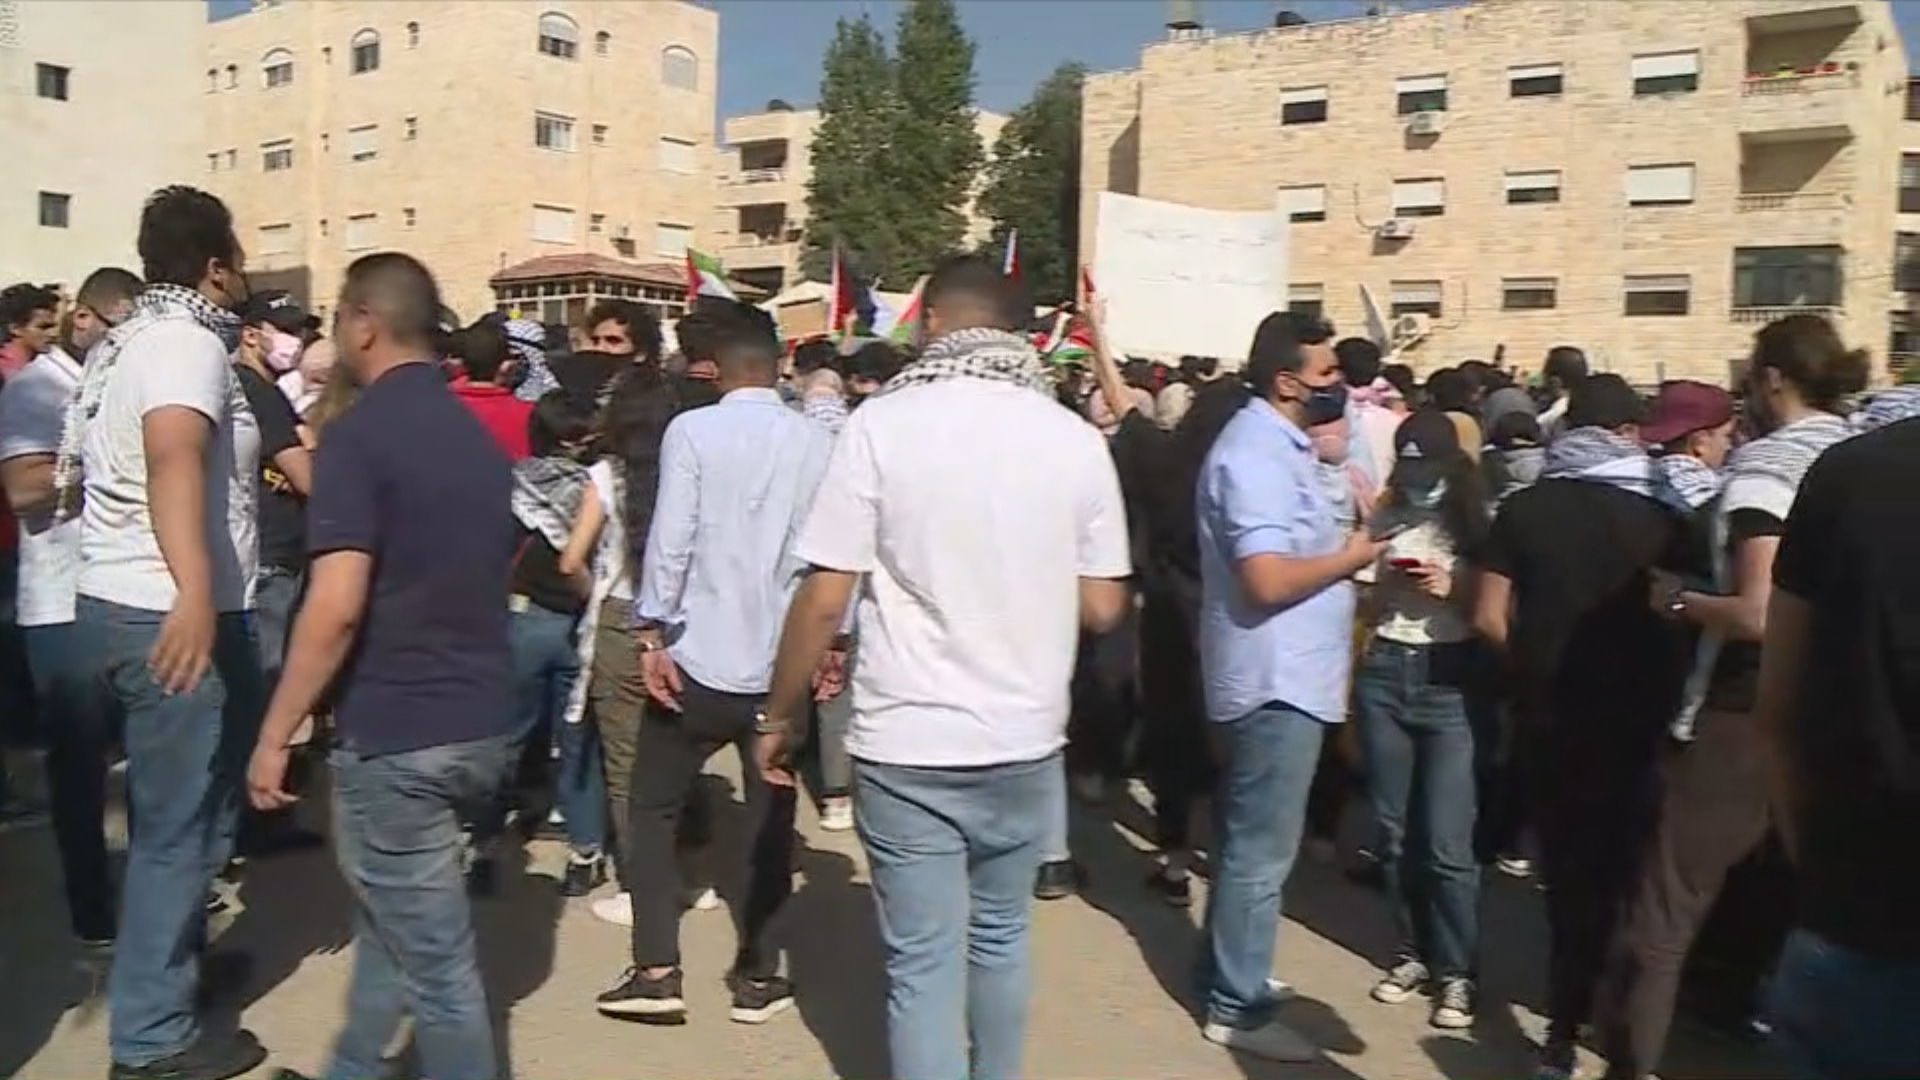 وقفة احتجاجية قرب السفارة الإسرائيلية ضد اعتداءات إسرائيل في القدس المحتلة. (المملكة)